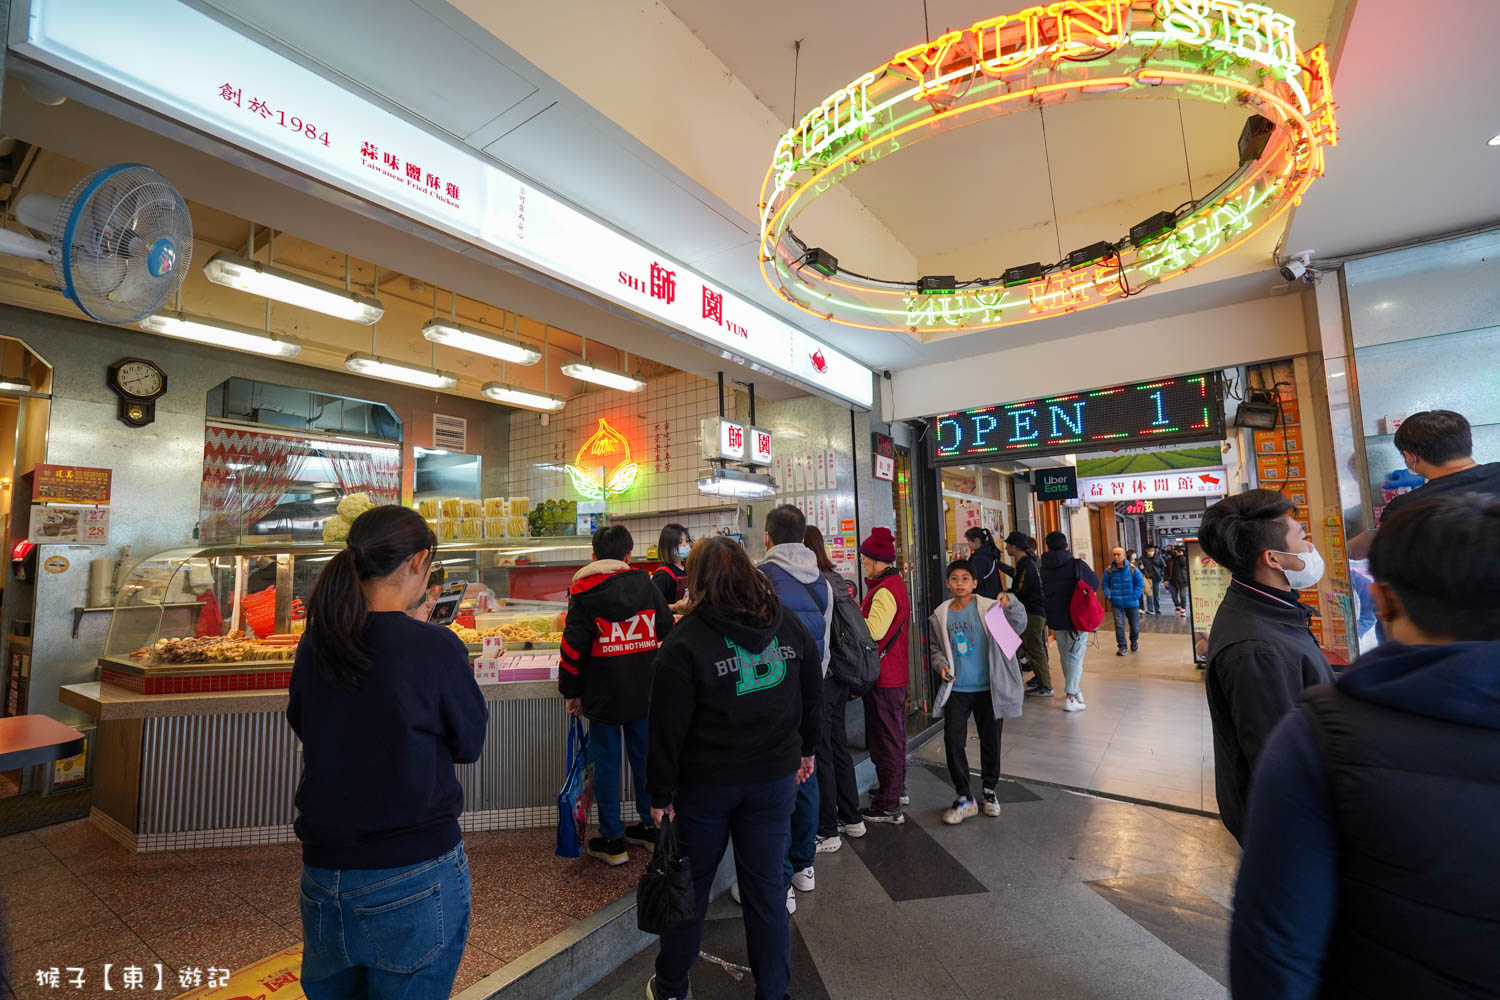 延伸閱讀：[台北] 西門町美食 師園鹽酥雞 菜單價格 在地40年老店 超過30種炸物 搭配九層塔、蒜頭超美味 飲料30元喝到飽